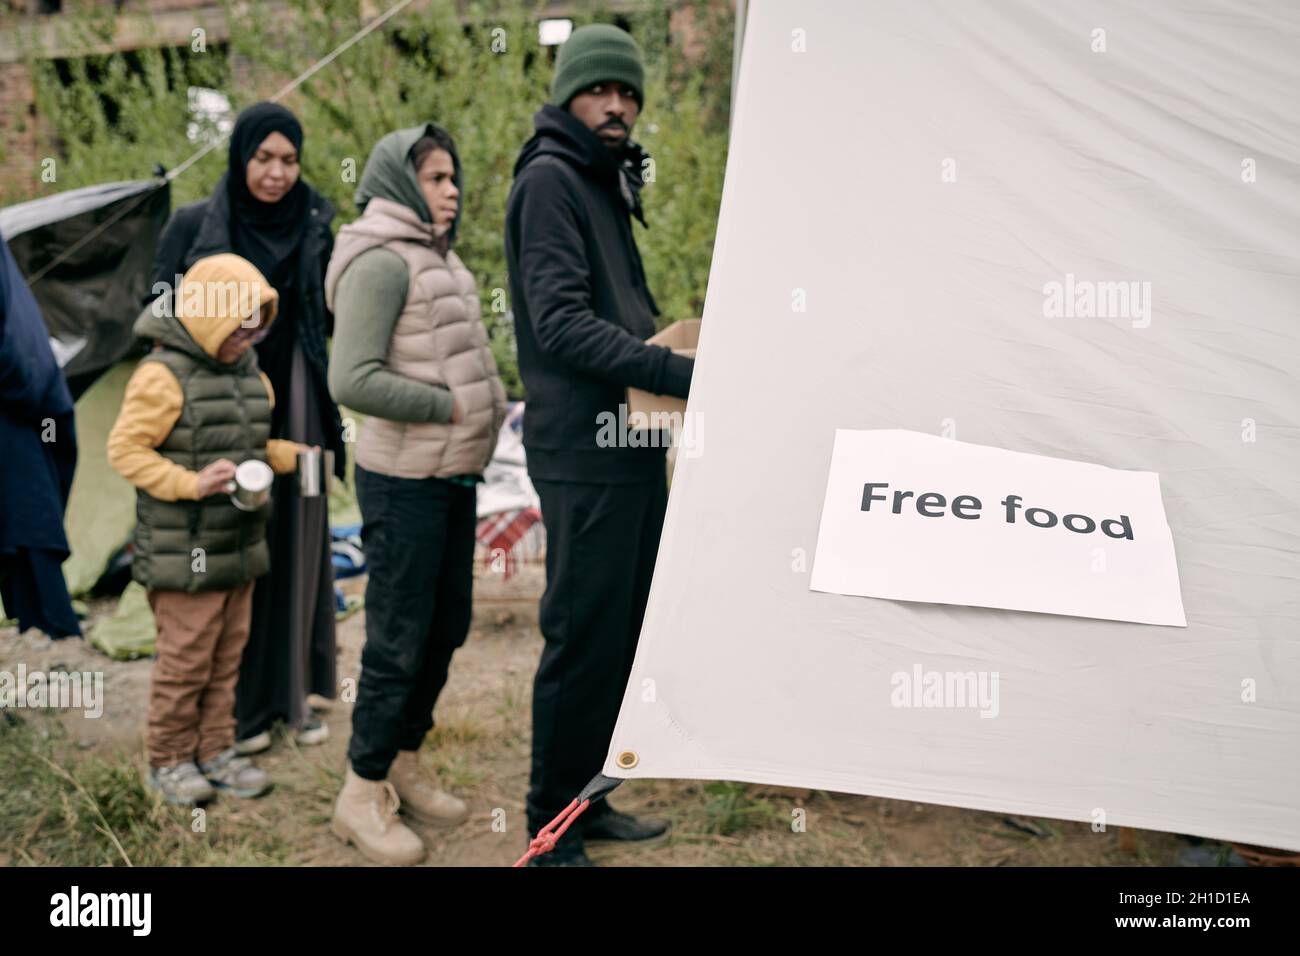 Fila di migranti che si trovano di fronte alla tenda del volontariato per ottenere del cibo gratuito Foto Stock